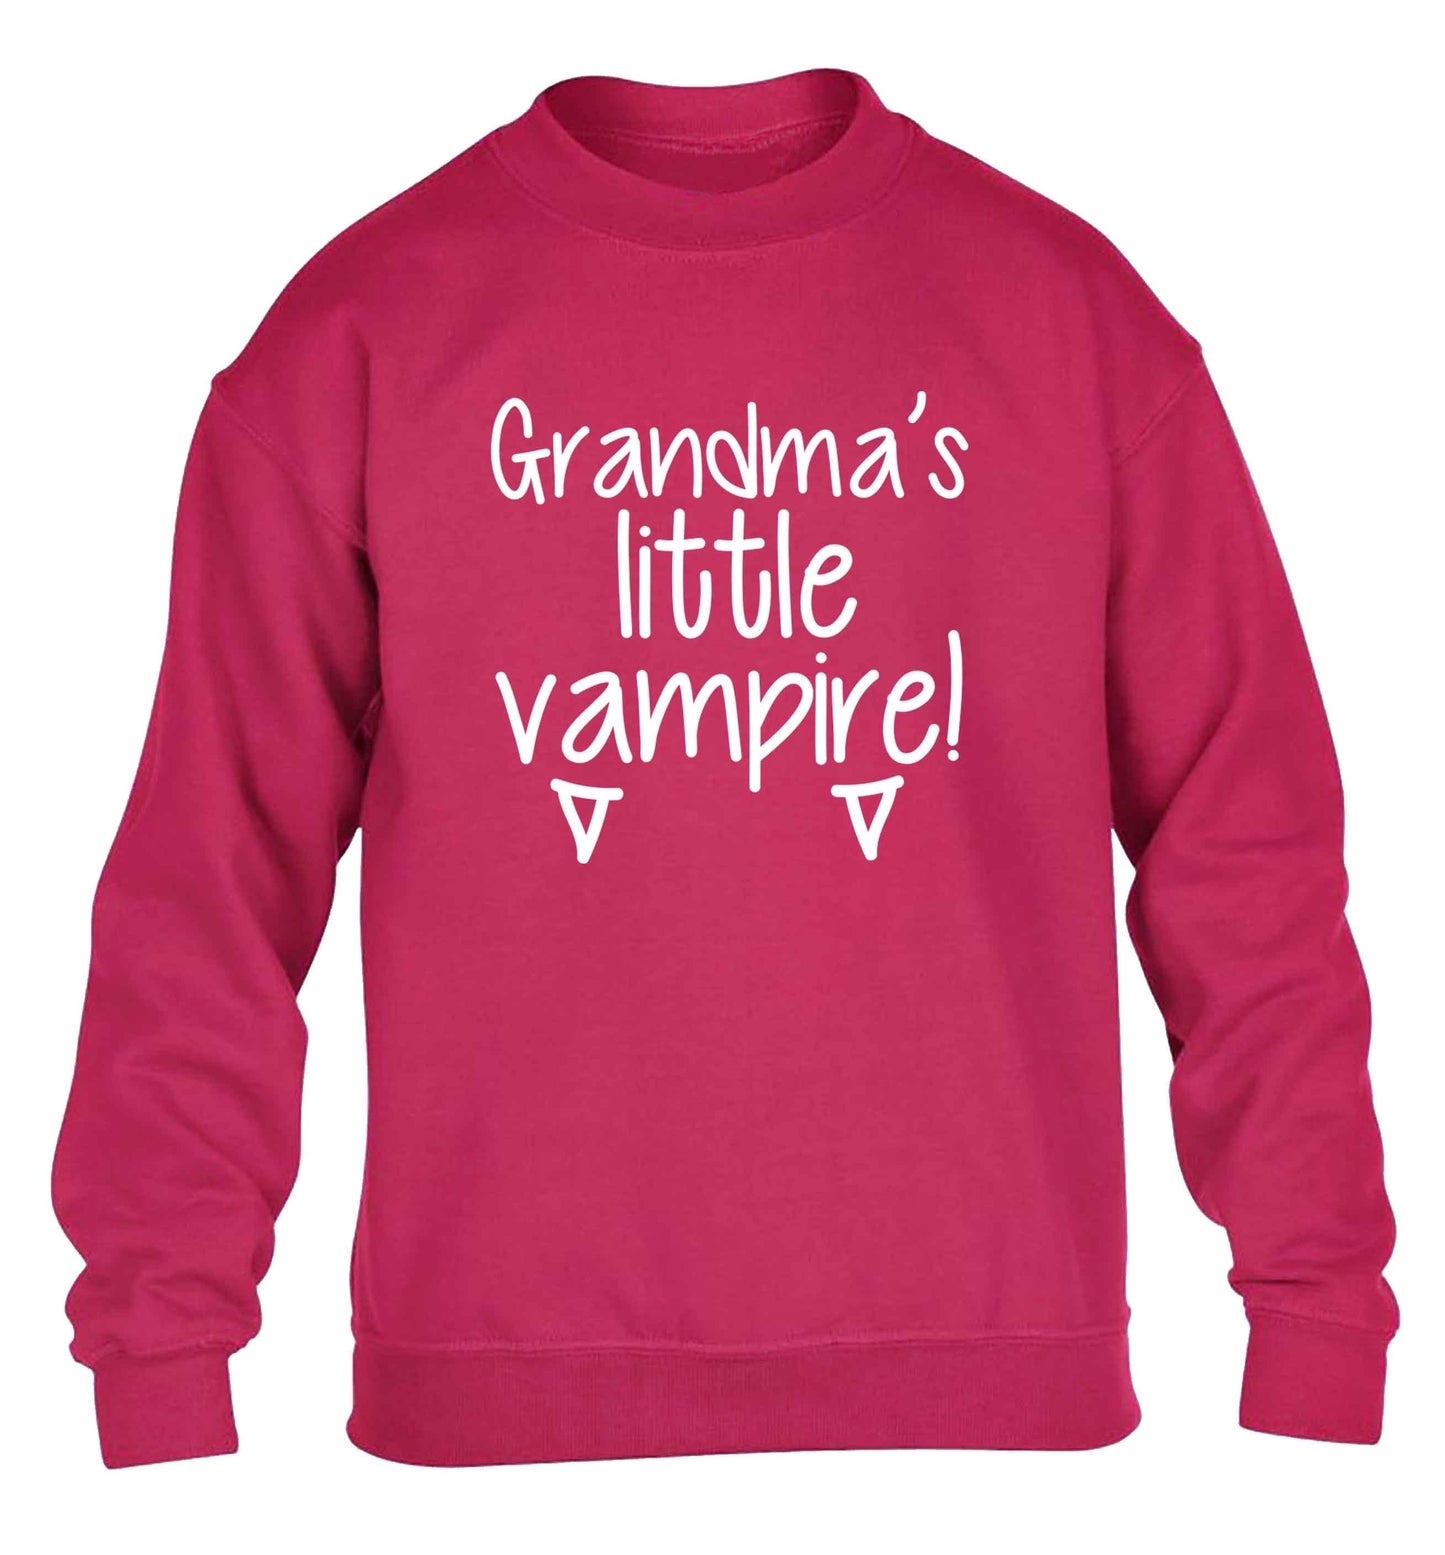 Grandma's little vampire children's pink sweater 12-13 Years